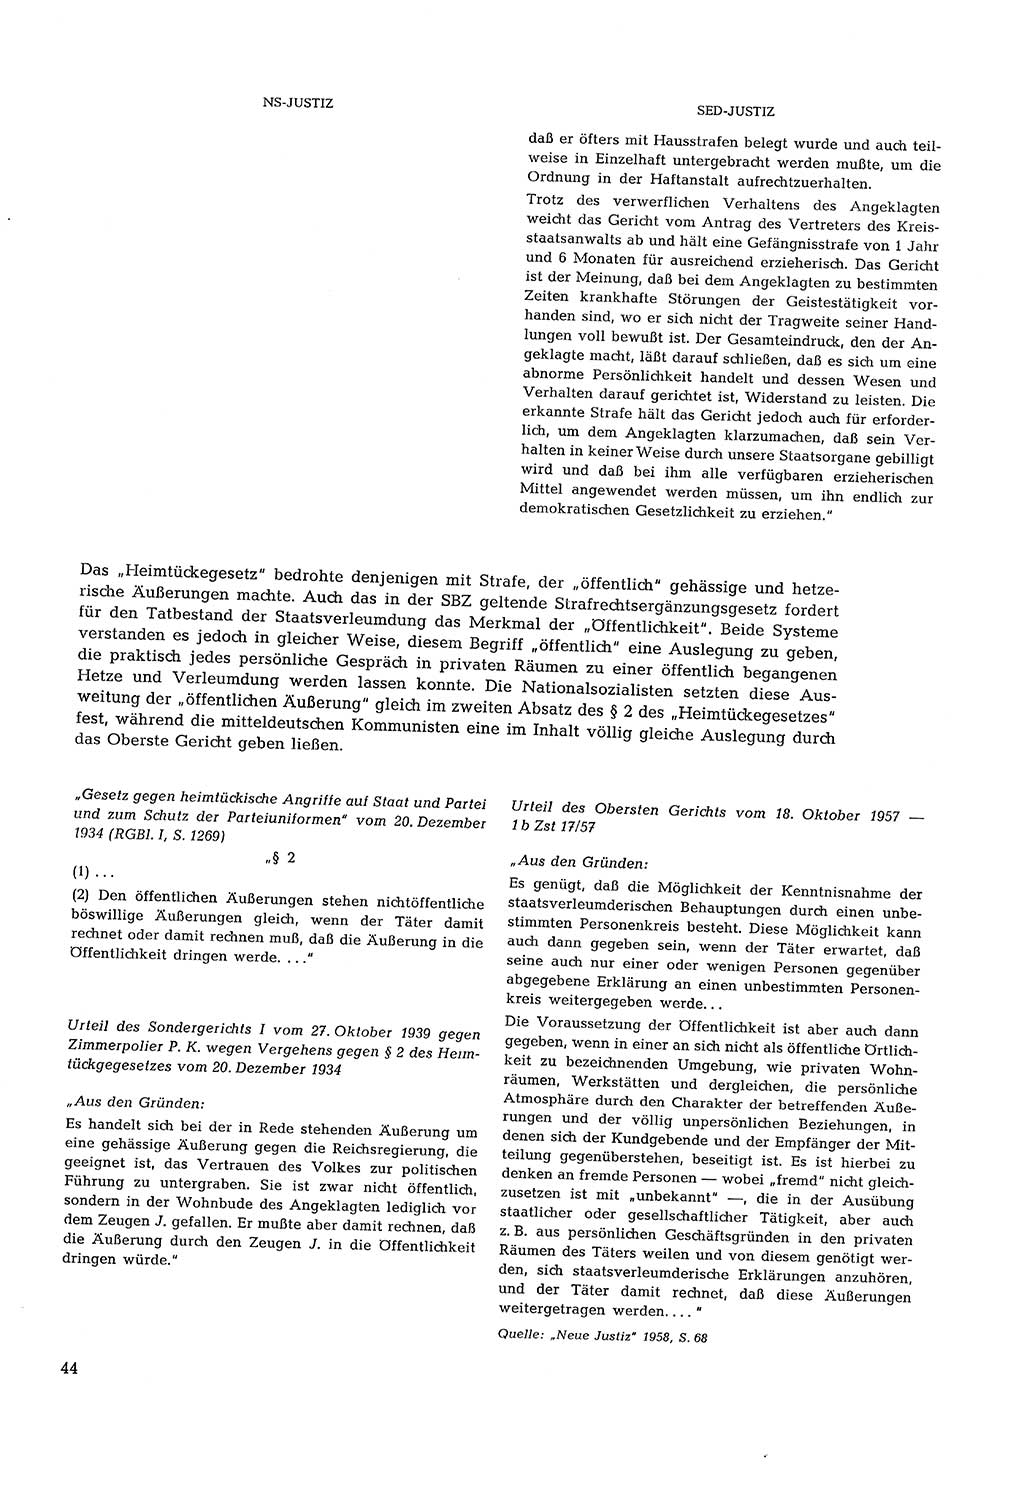 Partei-Justiz, Dokumentation über den nationalsozialistischen und kommunistischen Rechtsmißbrauch in Deutschland 1933-1963, Seite 44 (Part.-Just. Dtl. natsoz. komm. 1933-1963, S. 44)